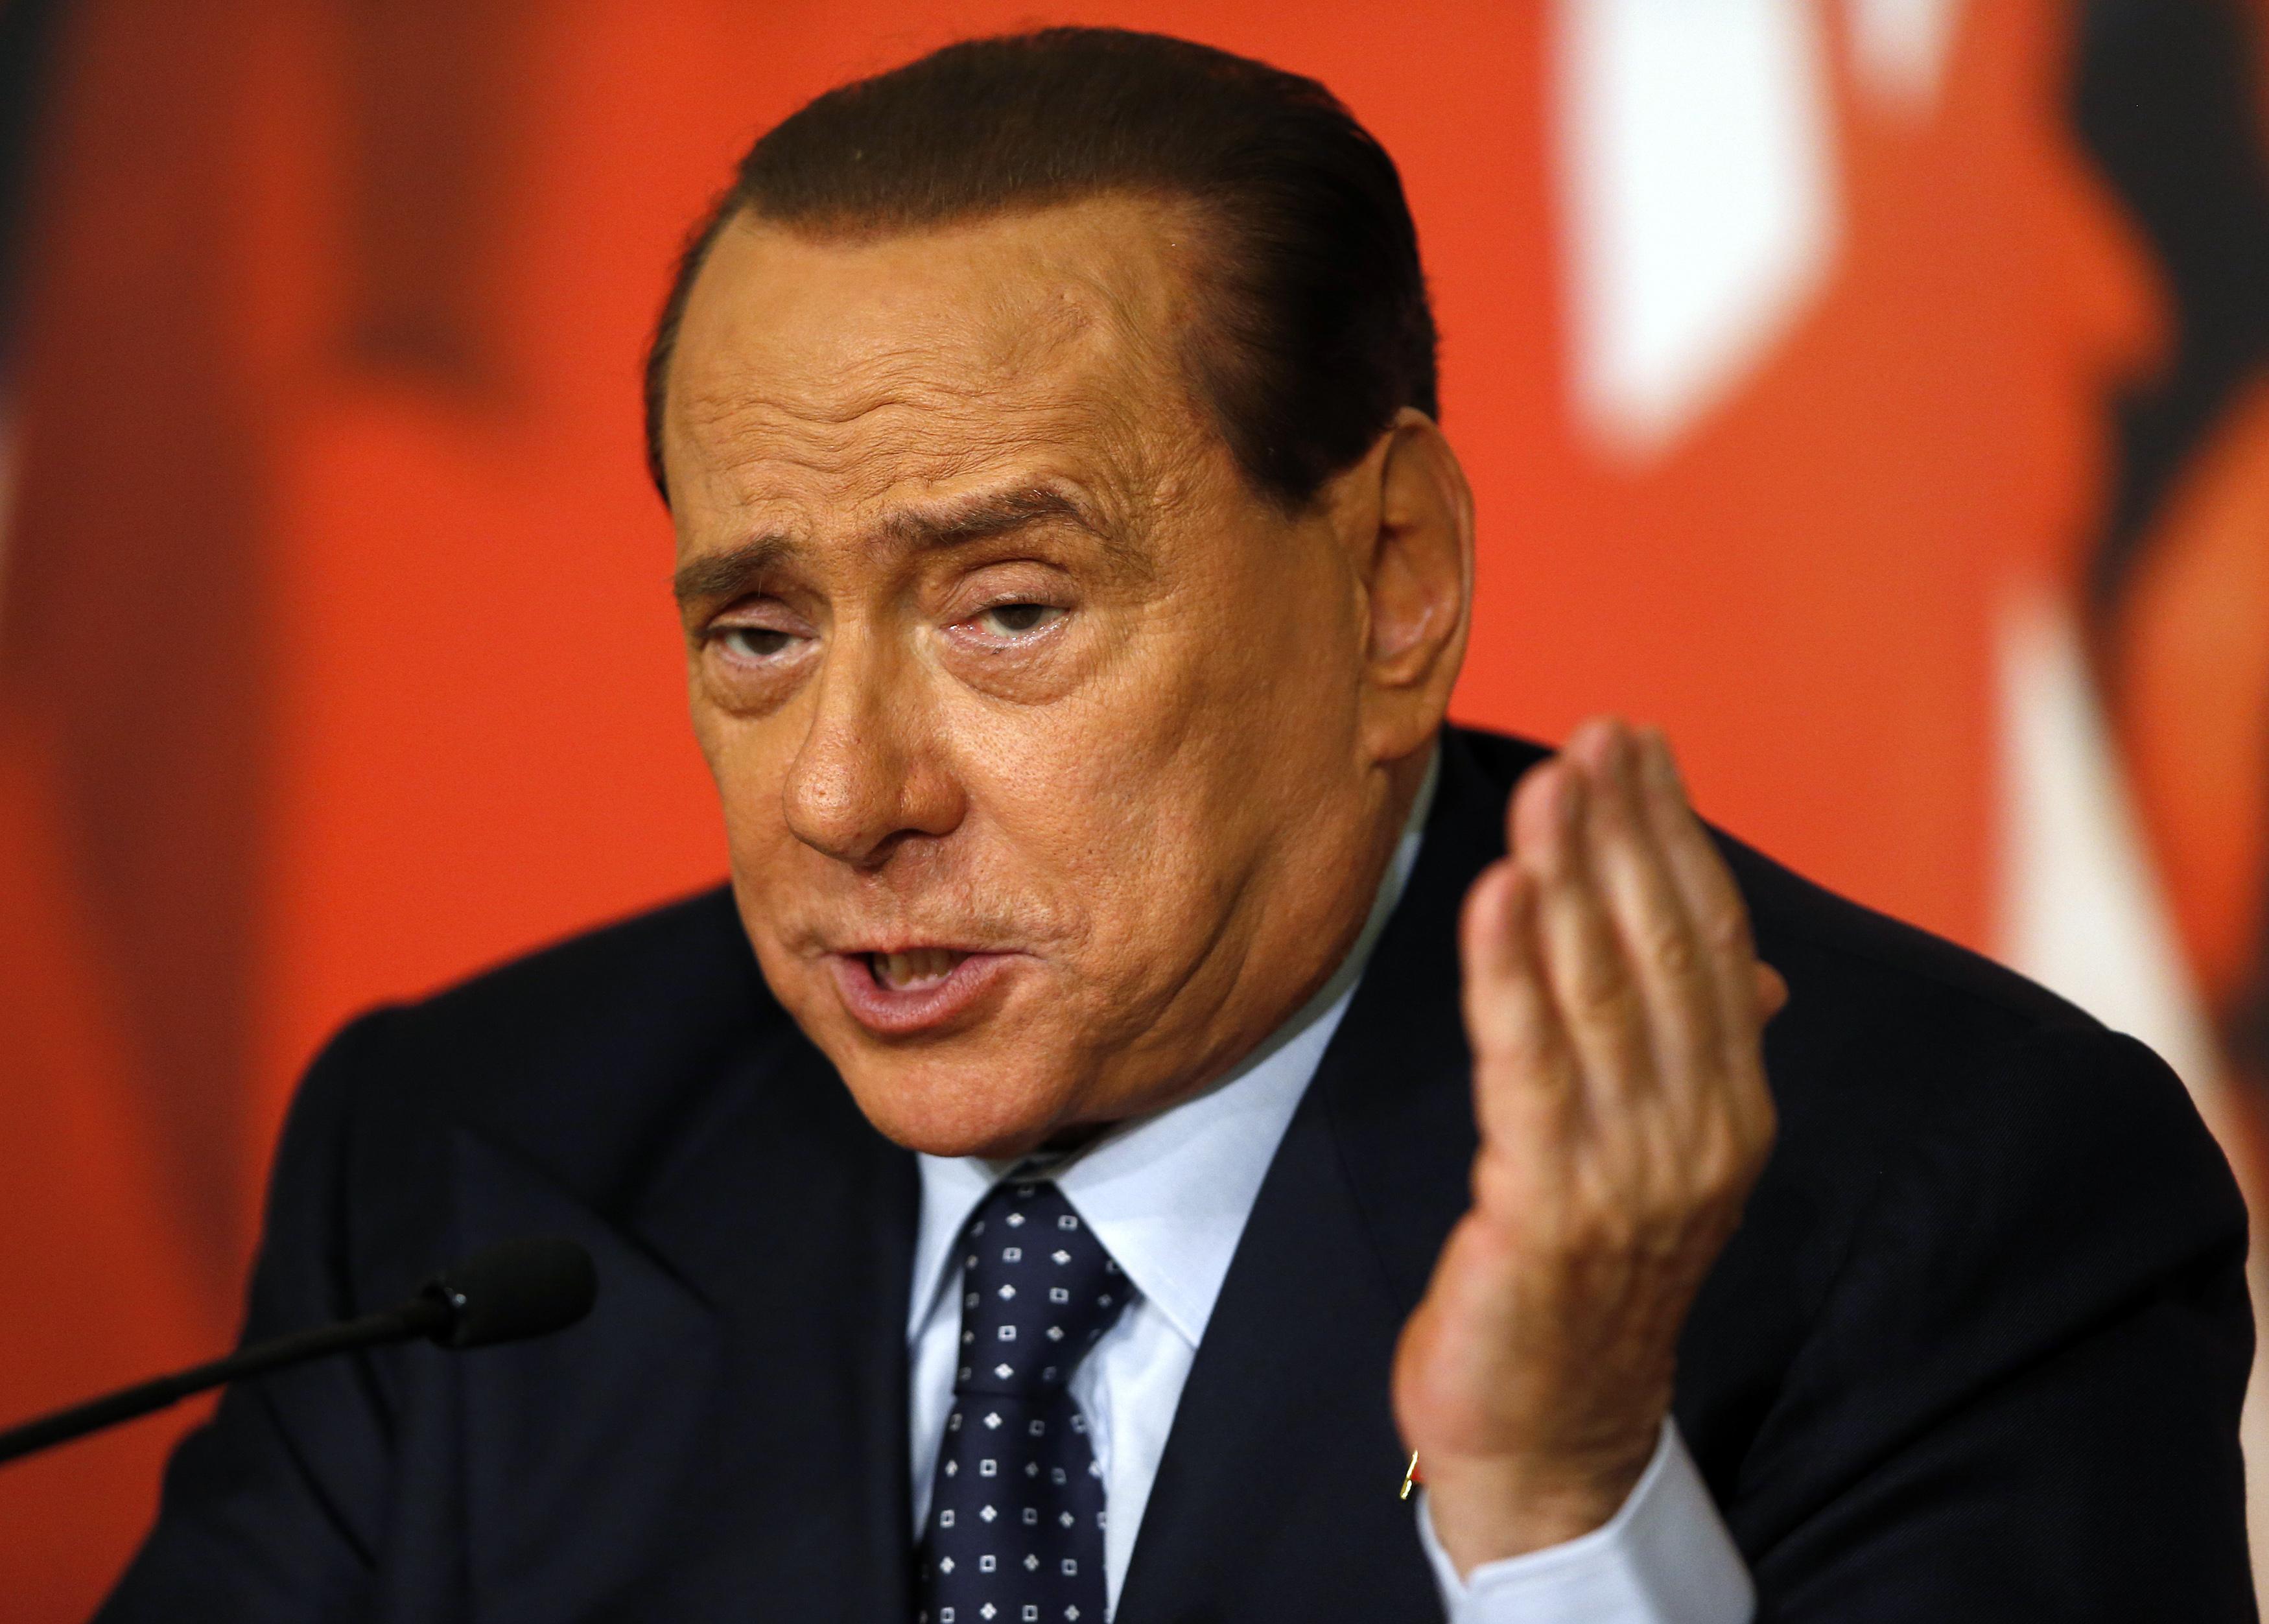 Italian parliament poised to expel Berlusconi